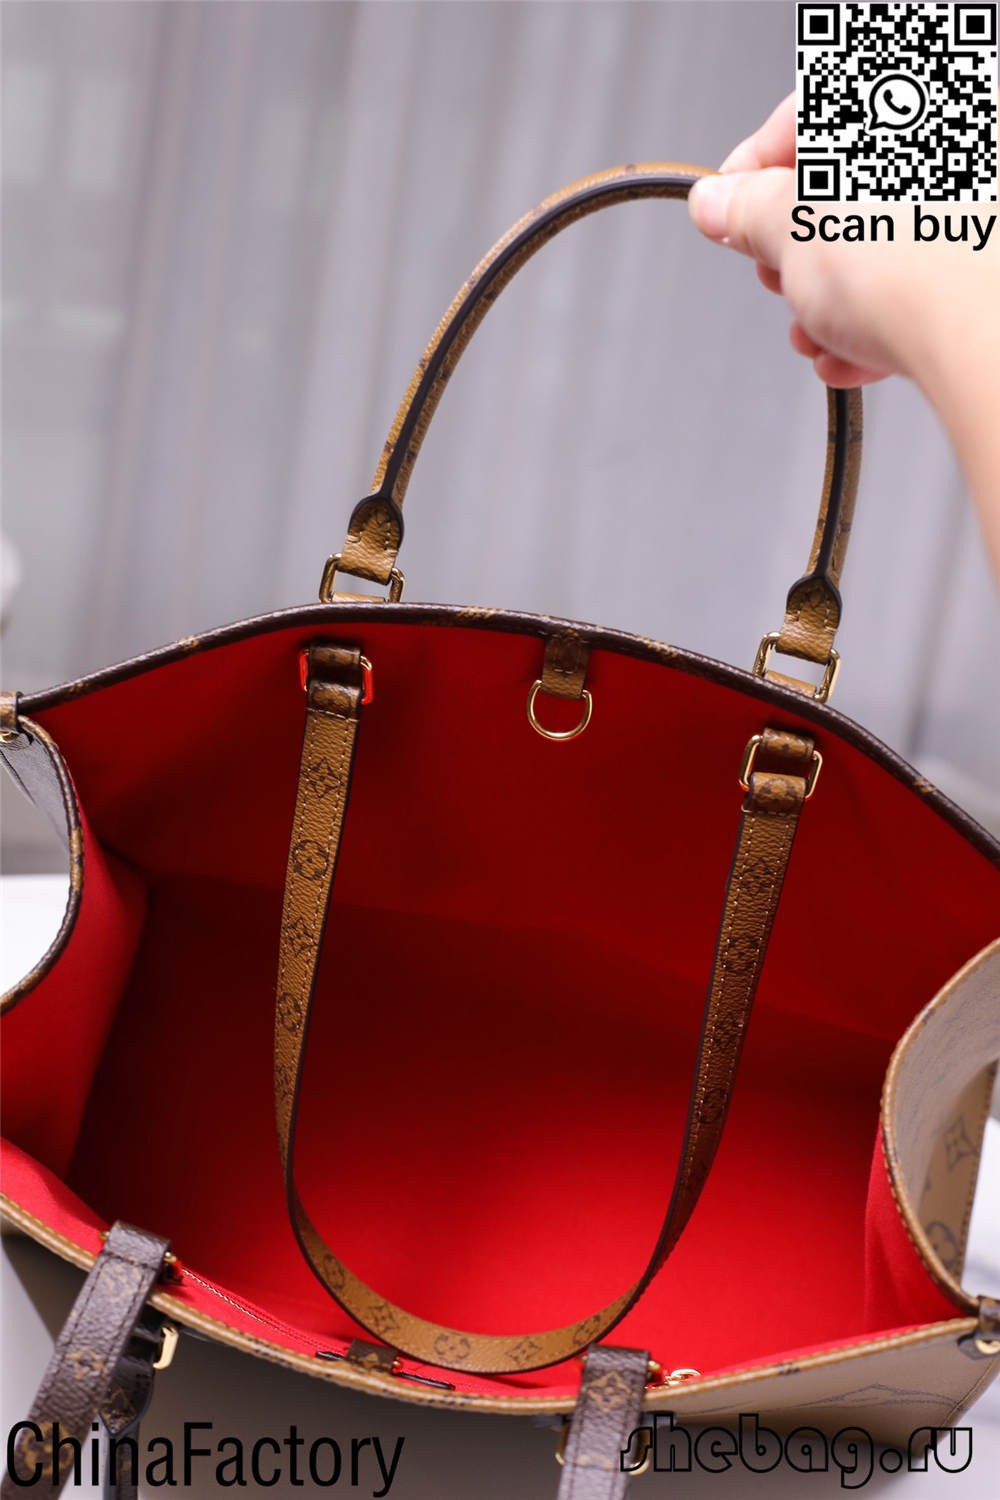 Купить реплику сумки louis vuitton jeff koons uk (последняя версия 2022 г.) - интернет-магазин поддельной сумки Louis Vuitton лучшего качества, дизайнерская сумка реплики ru